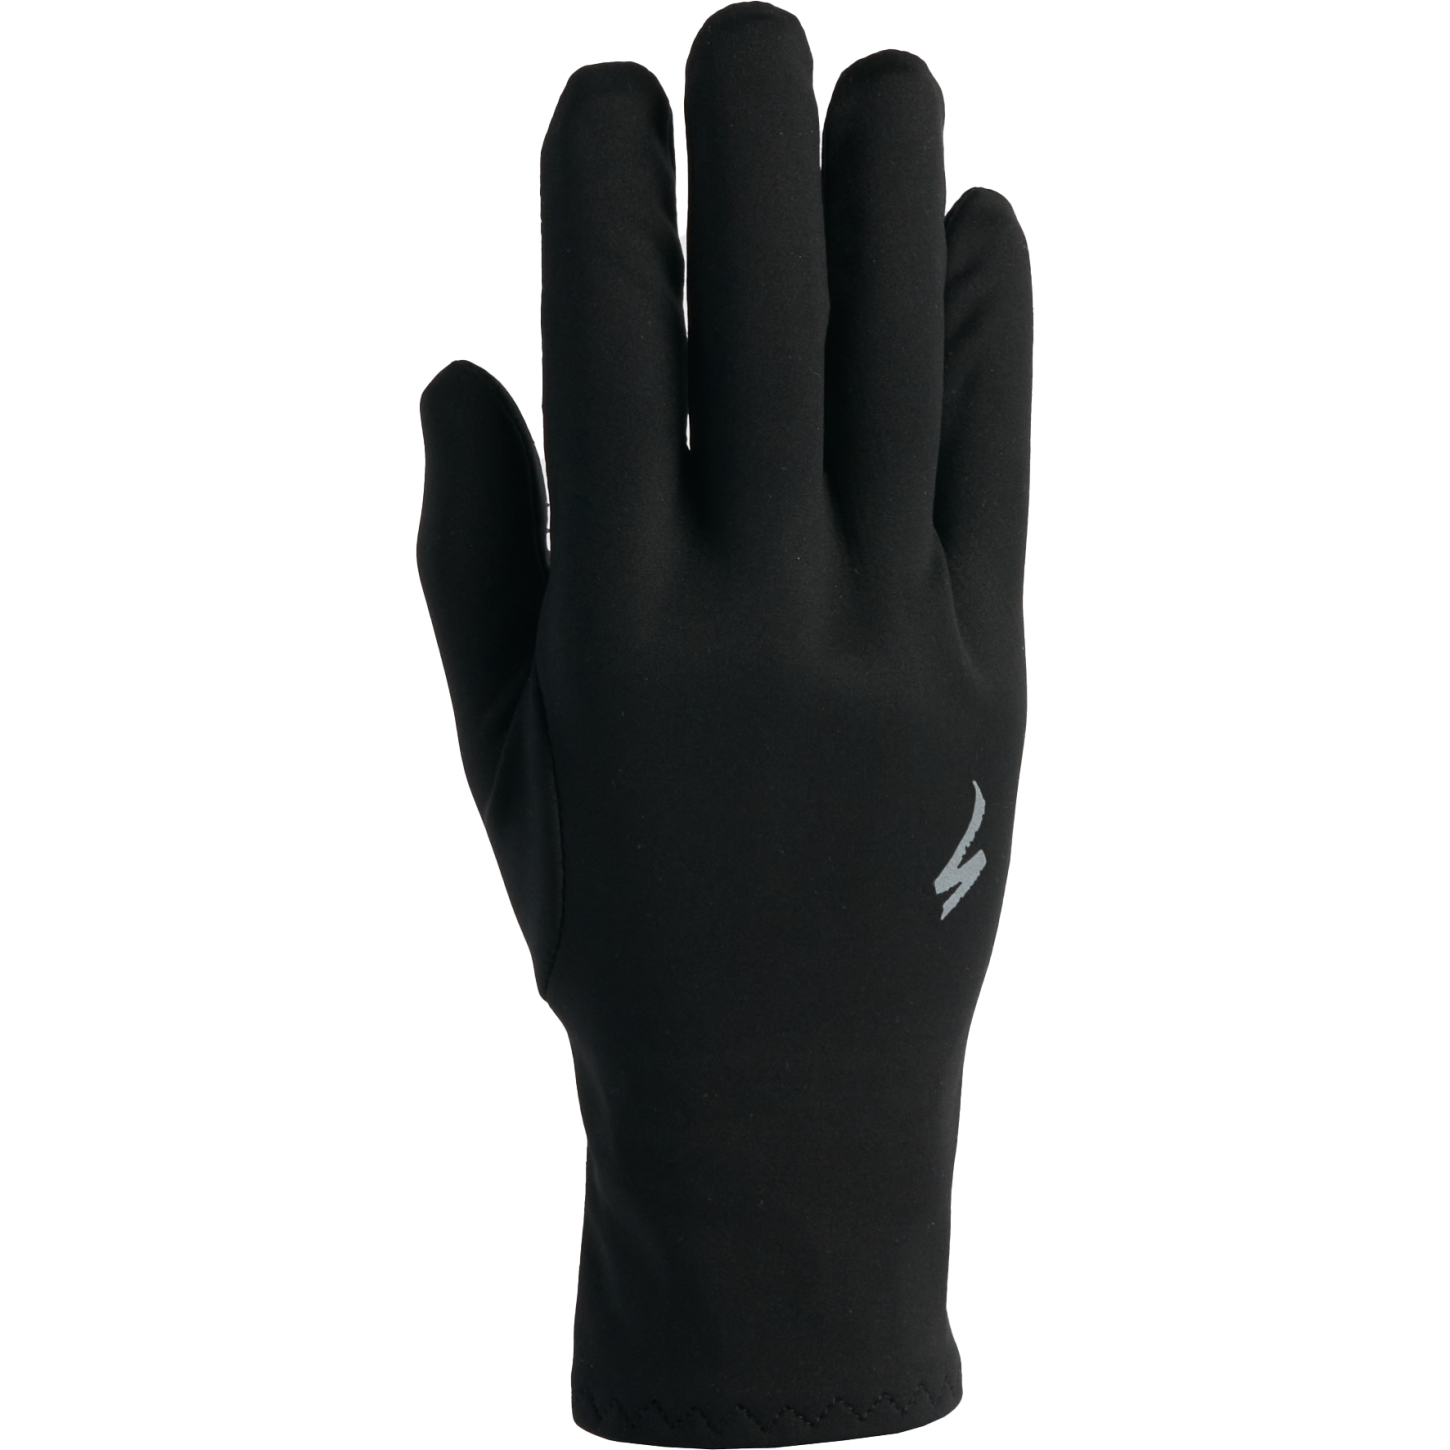 Produktbild von Specialized Softshell Thermal Handschuhe - schwarz